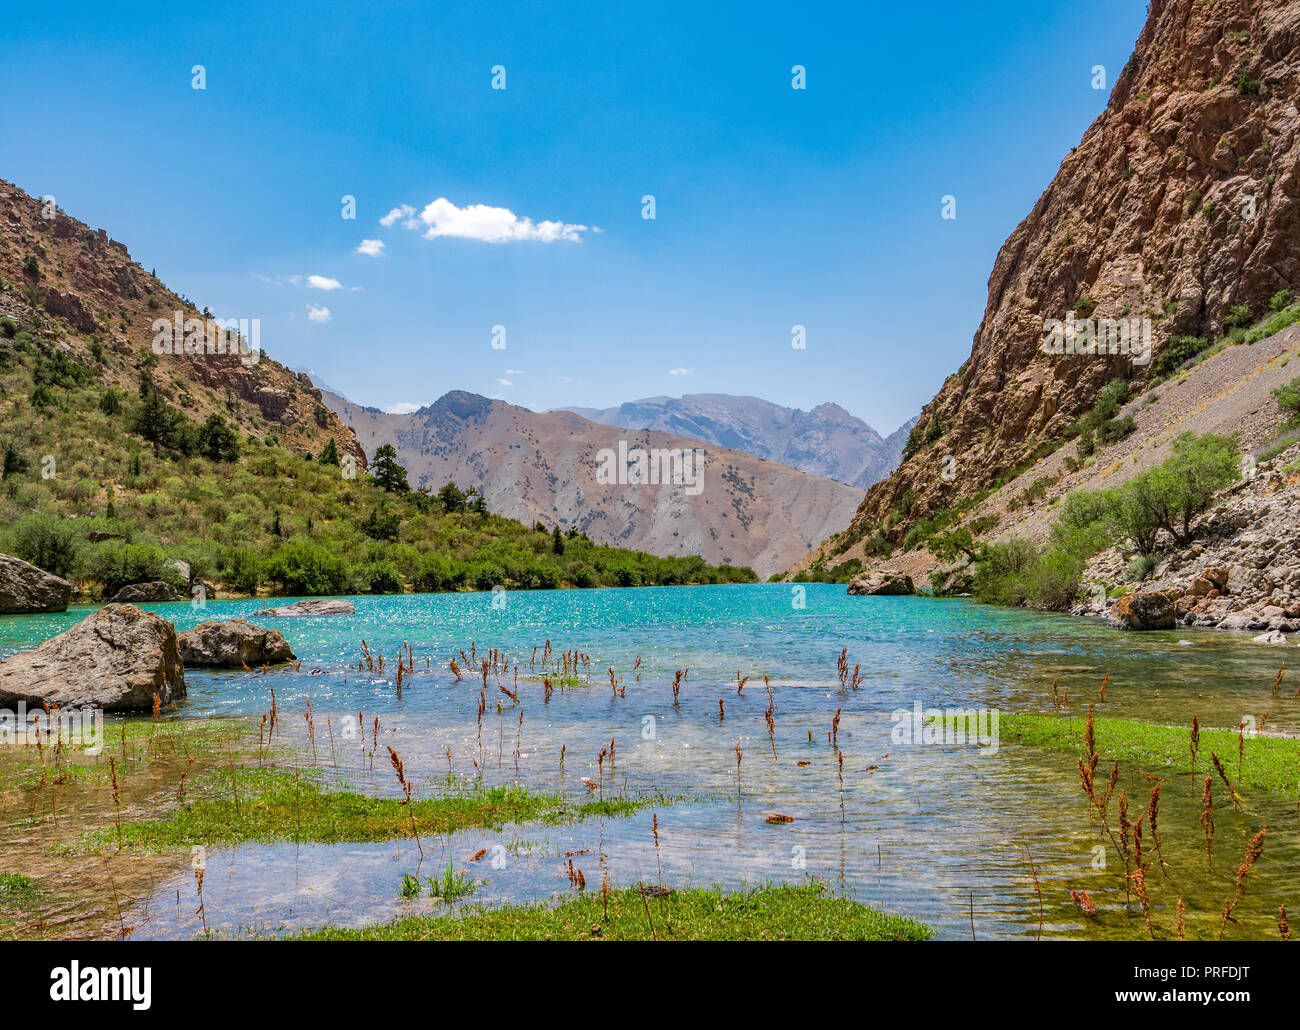 Kleine Alo Berg See mit türkisfarbenem Wasser auf rocky mountain Hintergrund. Die Fann Mountains, Tadschikistan, Zentralasien Stockfoto